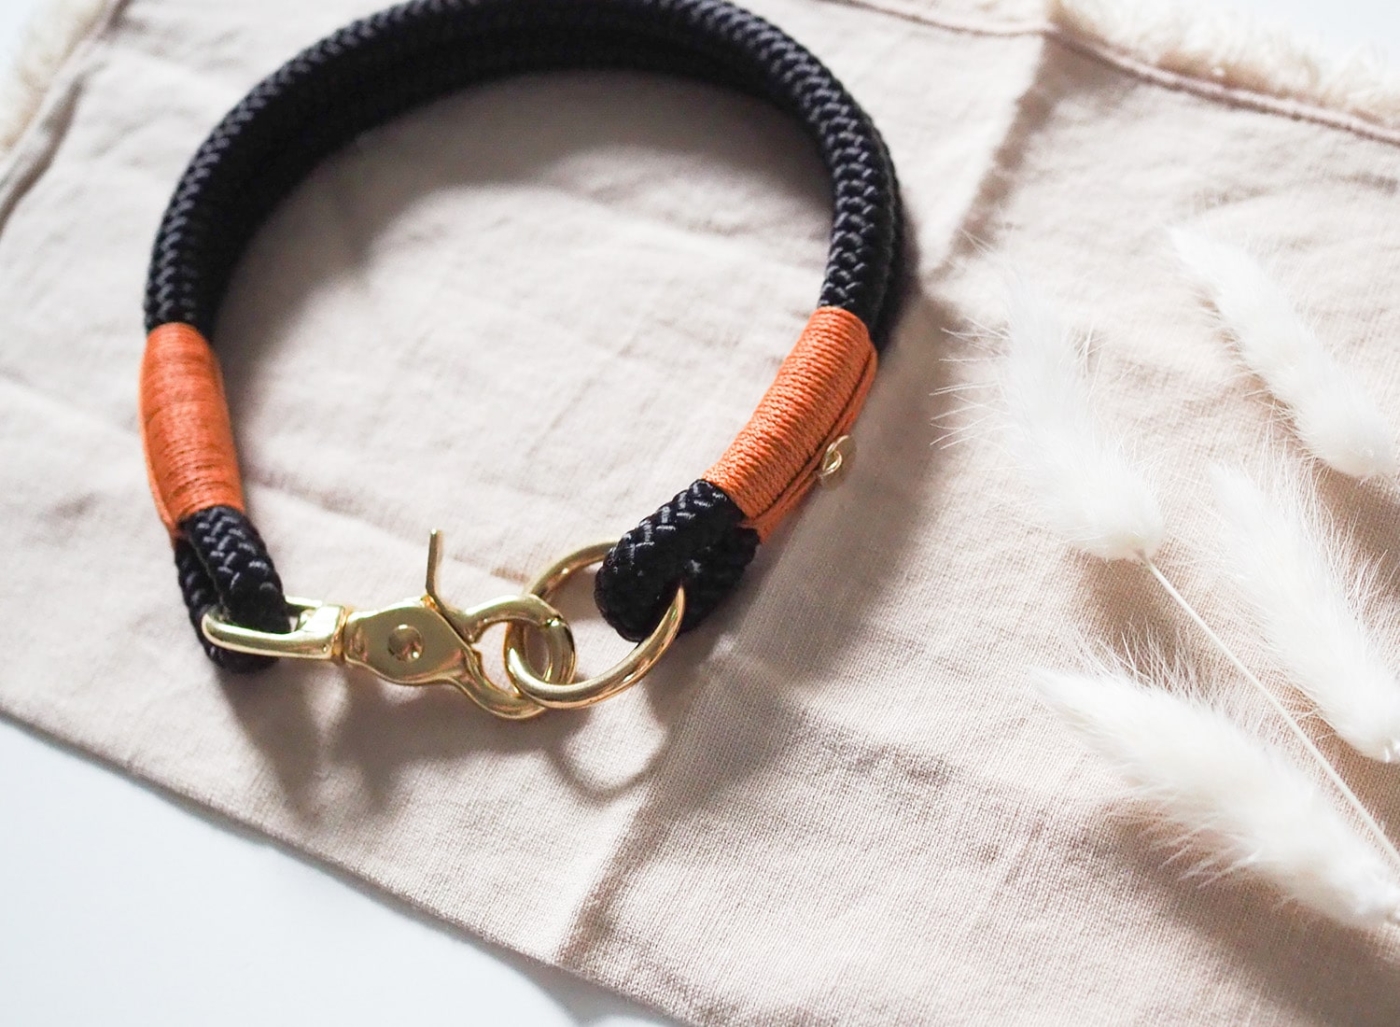 Maßgeschneidertes Halsband aus Tau in schwarz mit Details in Camel und Messing-Karabinern.